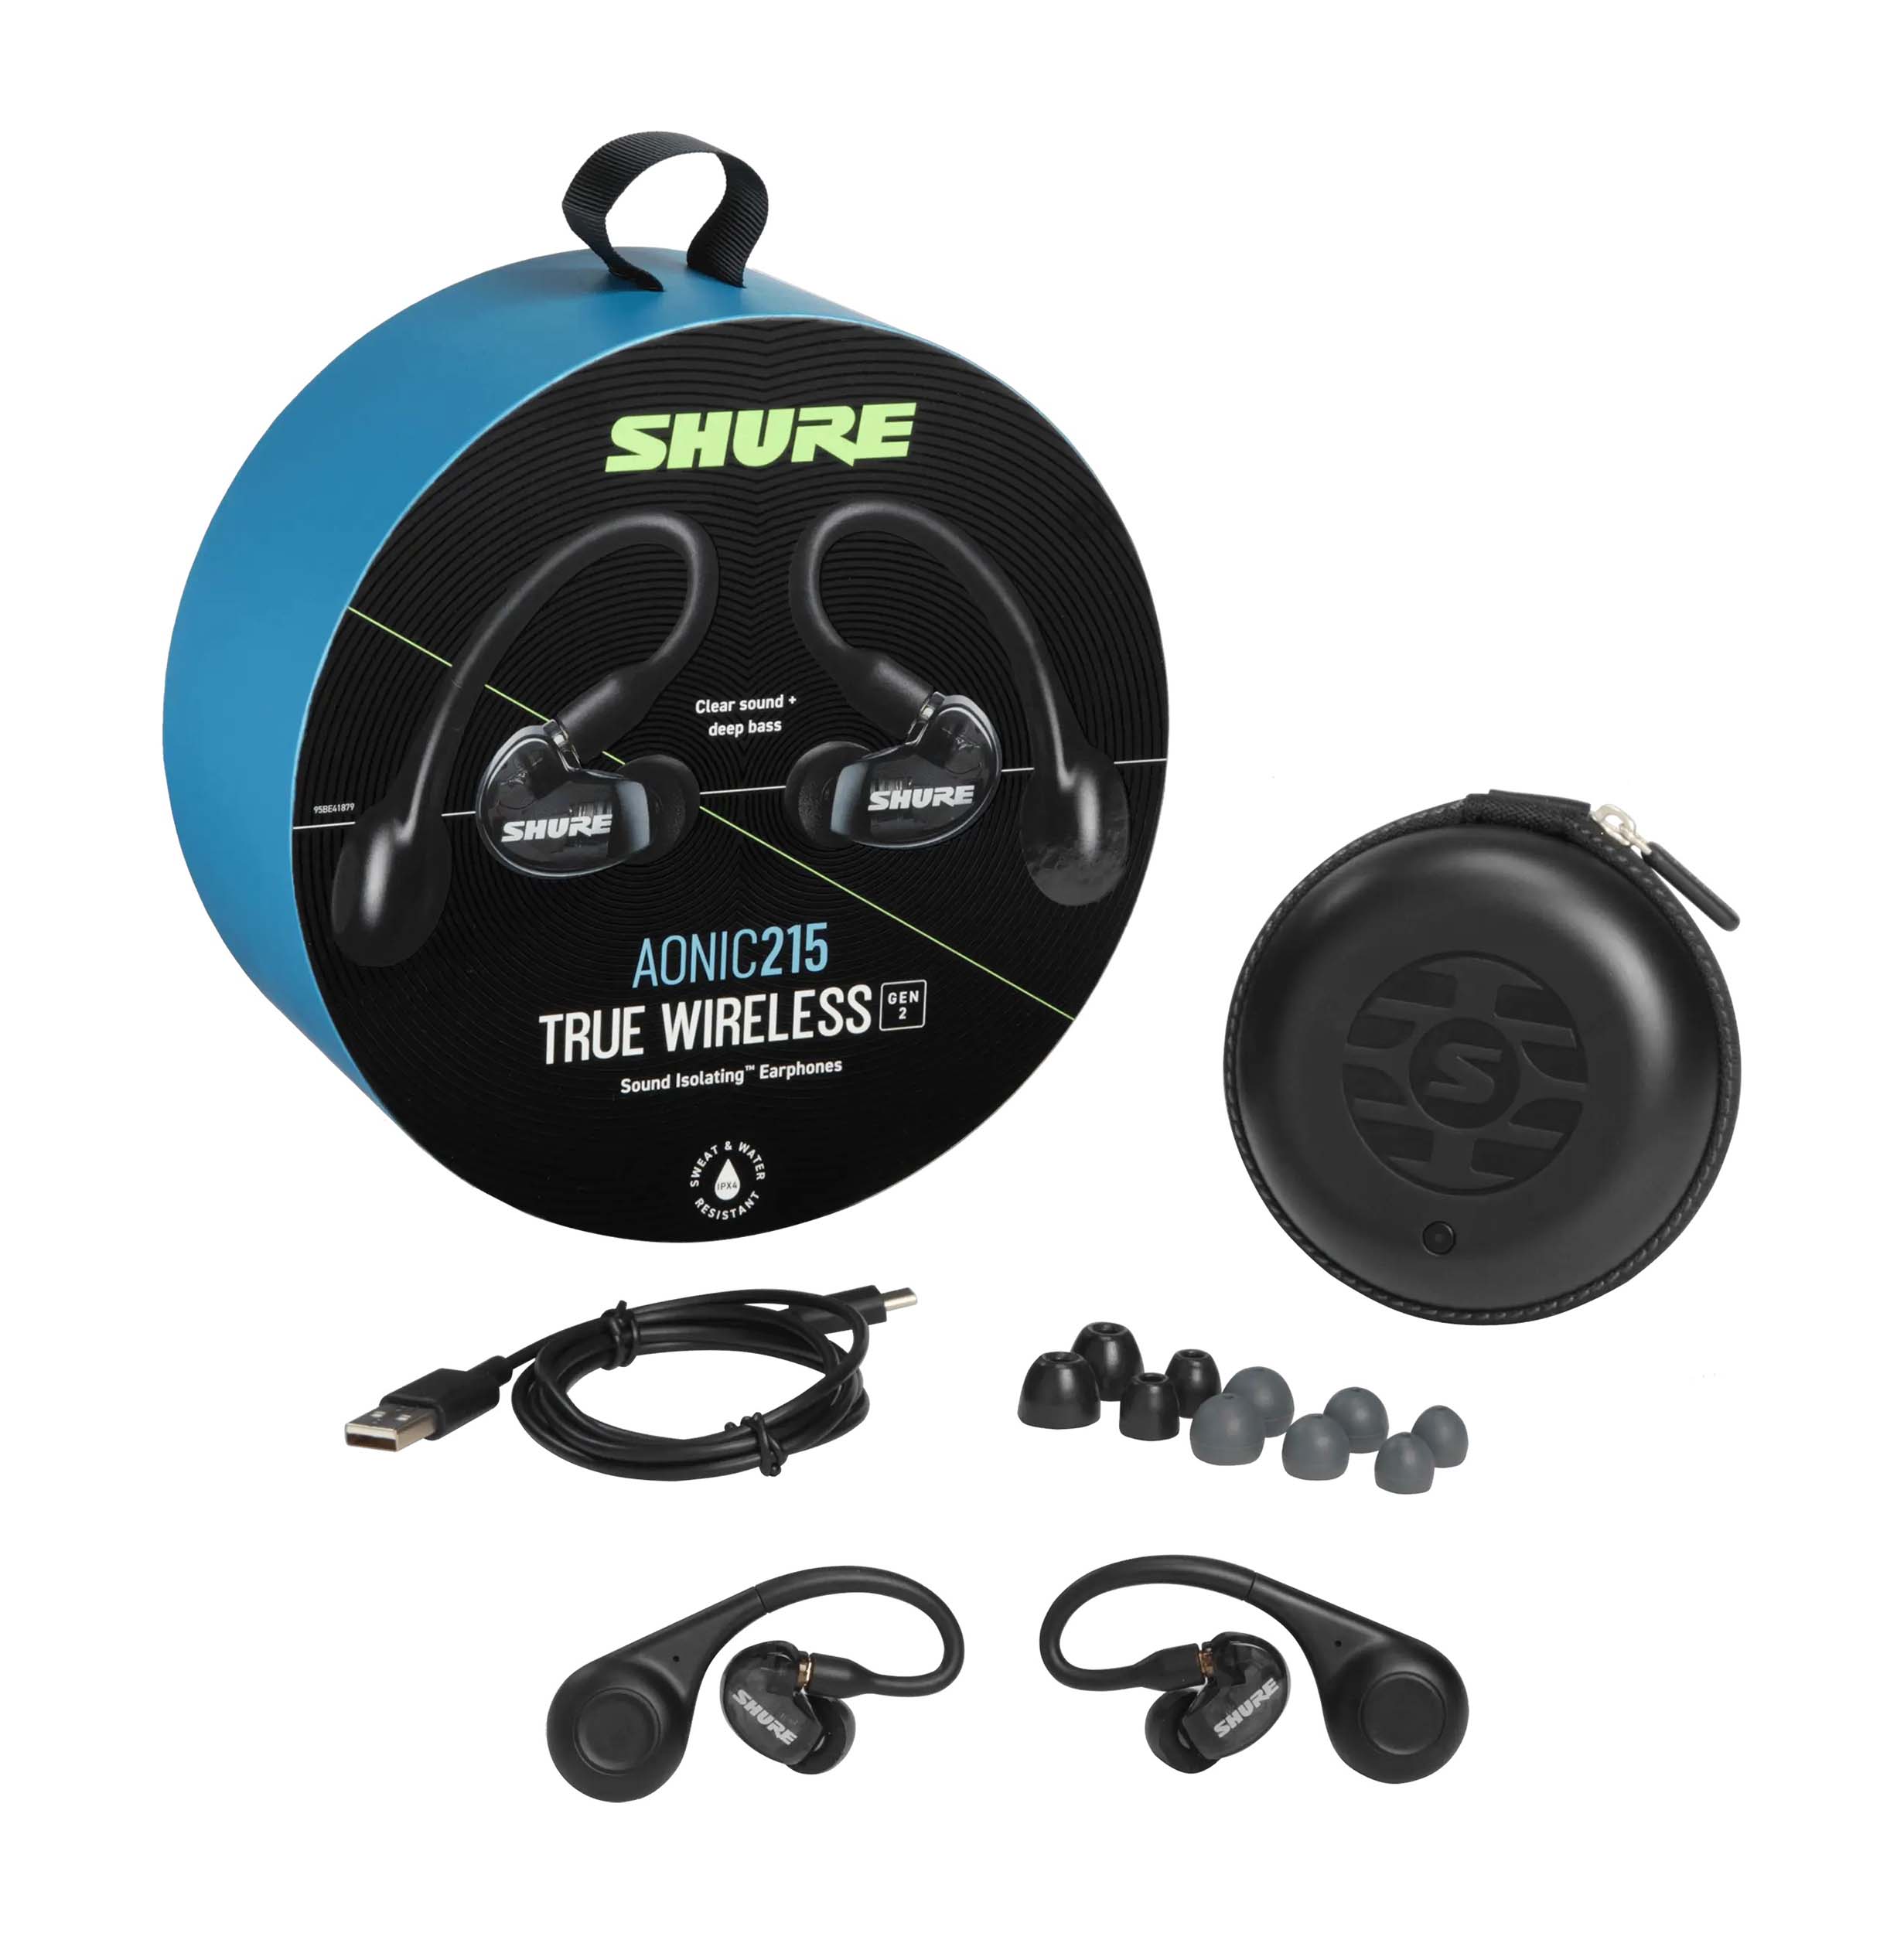 Shure SE21DYBK+TW2, Gen 2 True Wireless Sound Isolating Earphones by Shure